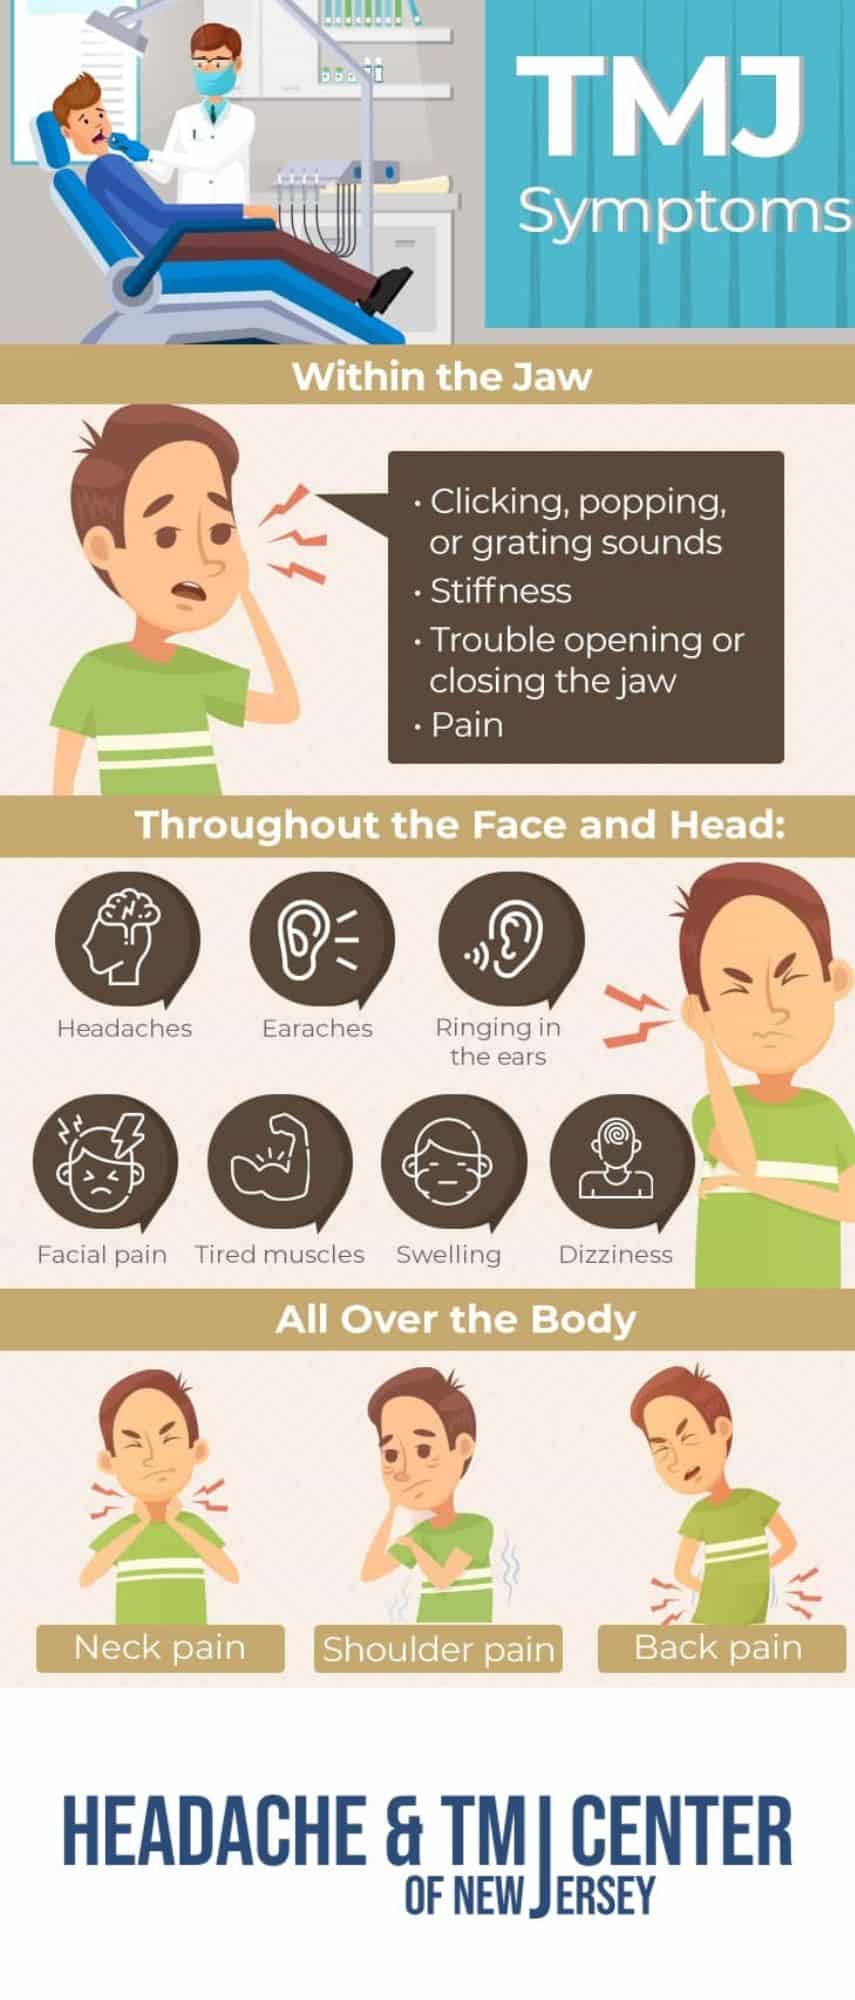 TMJ symptoms